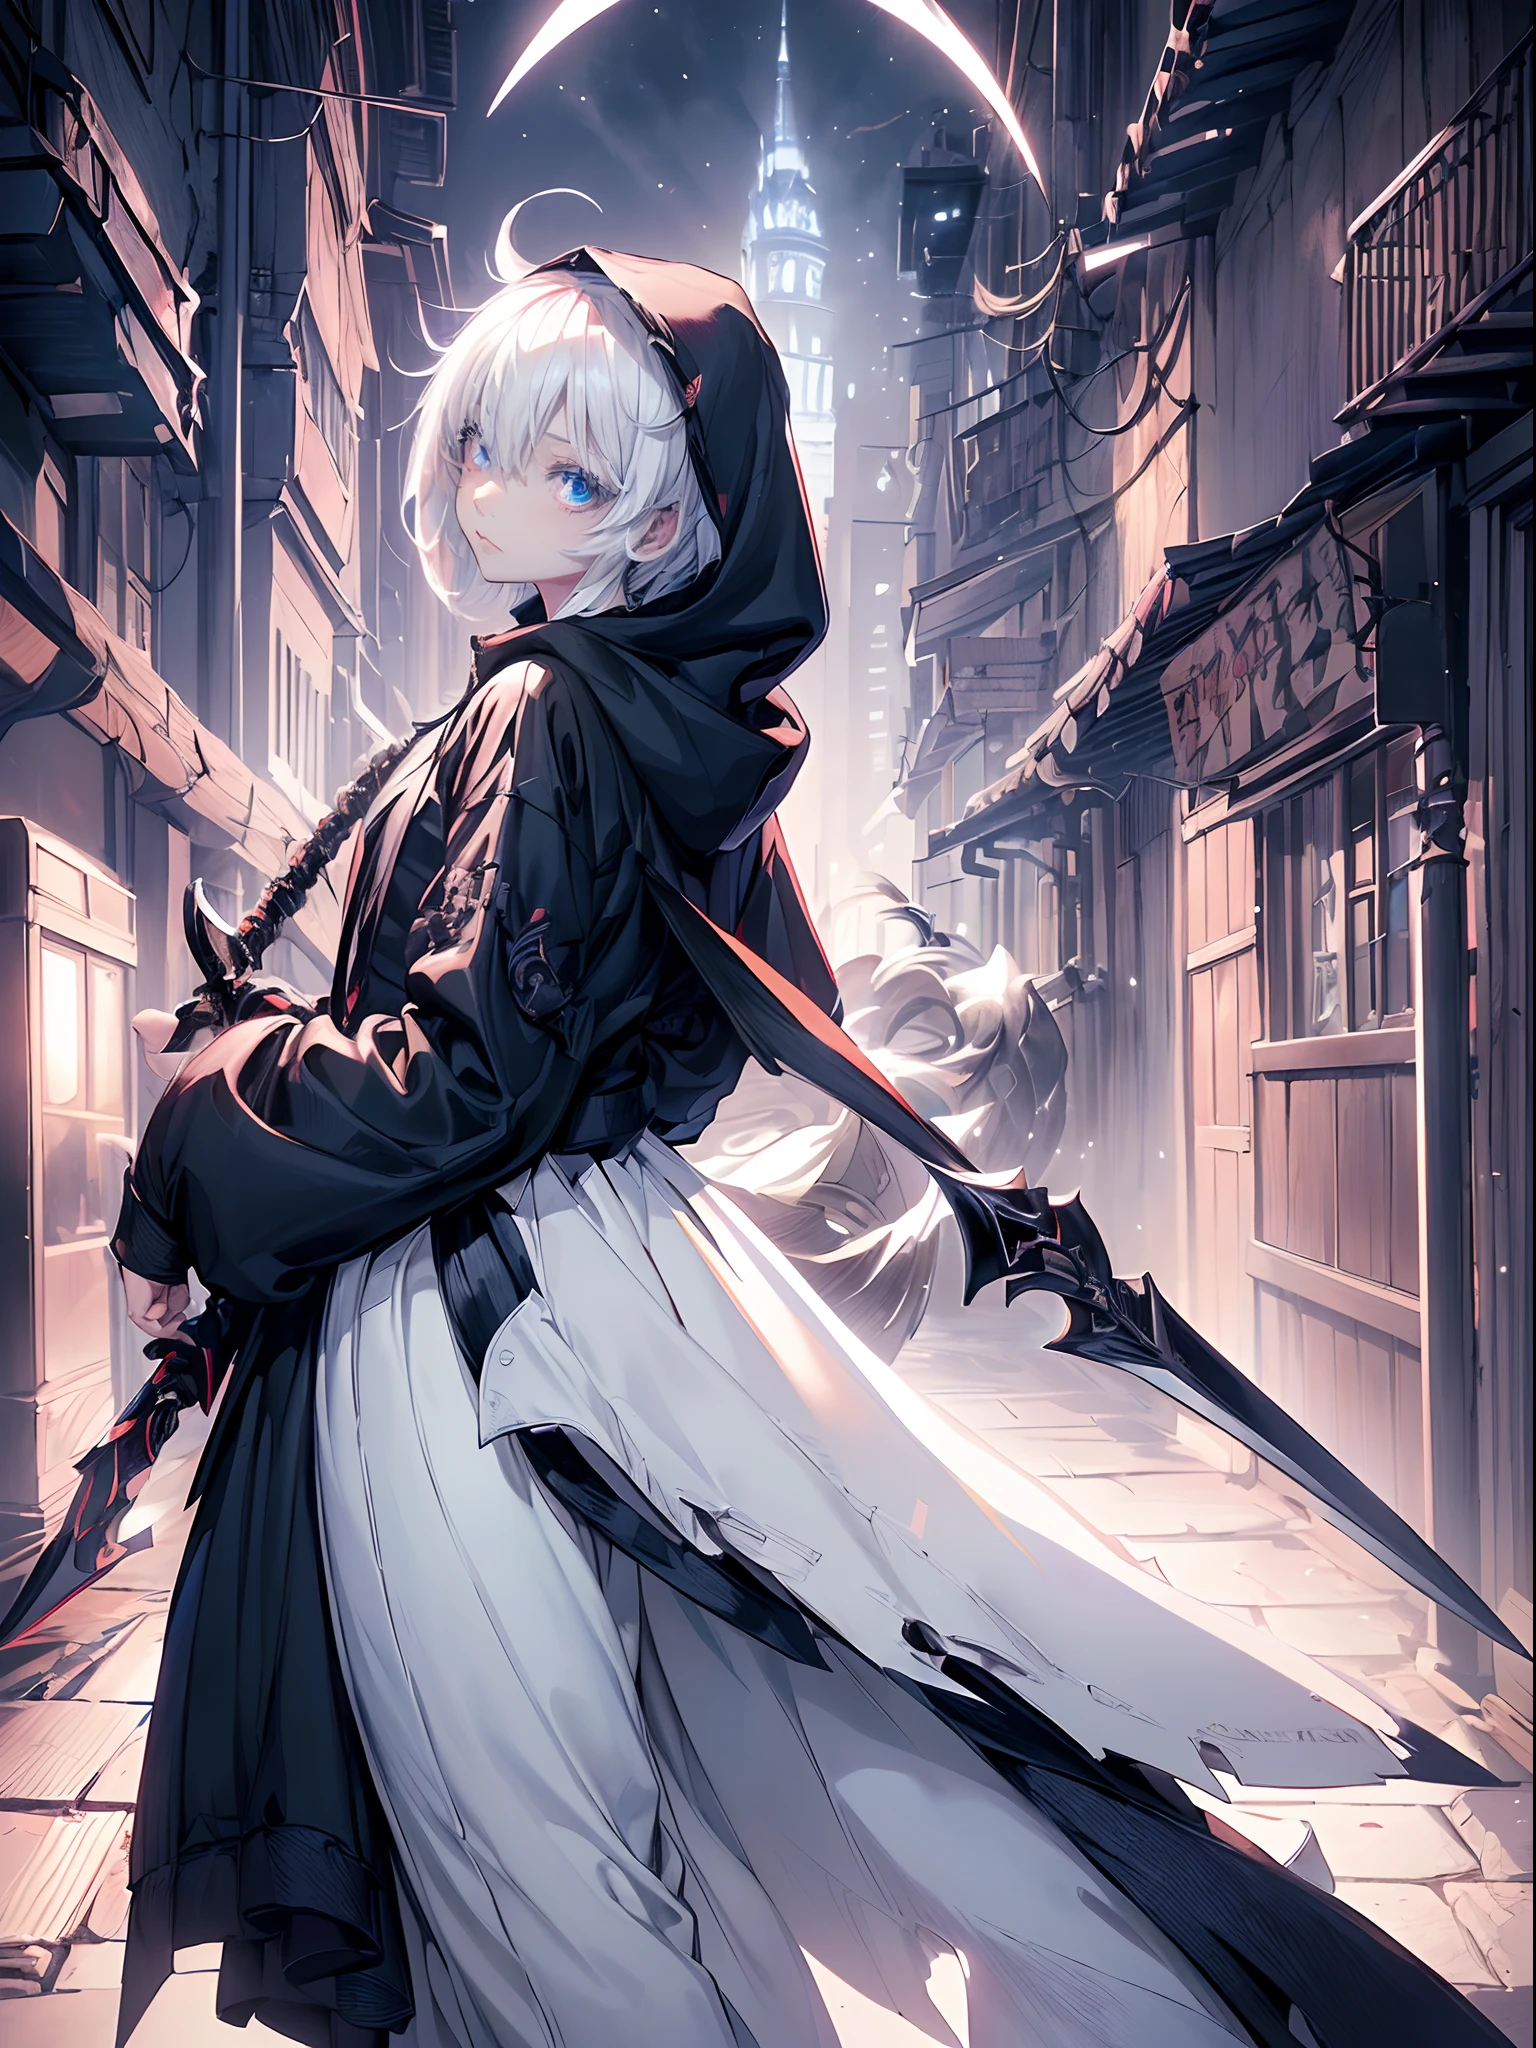 аниме девушка с мечом в темном переулке с косой - SeaArt AI